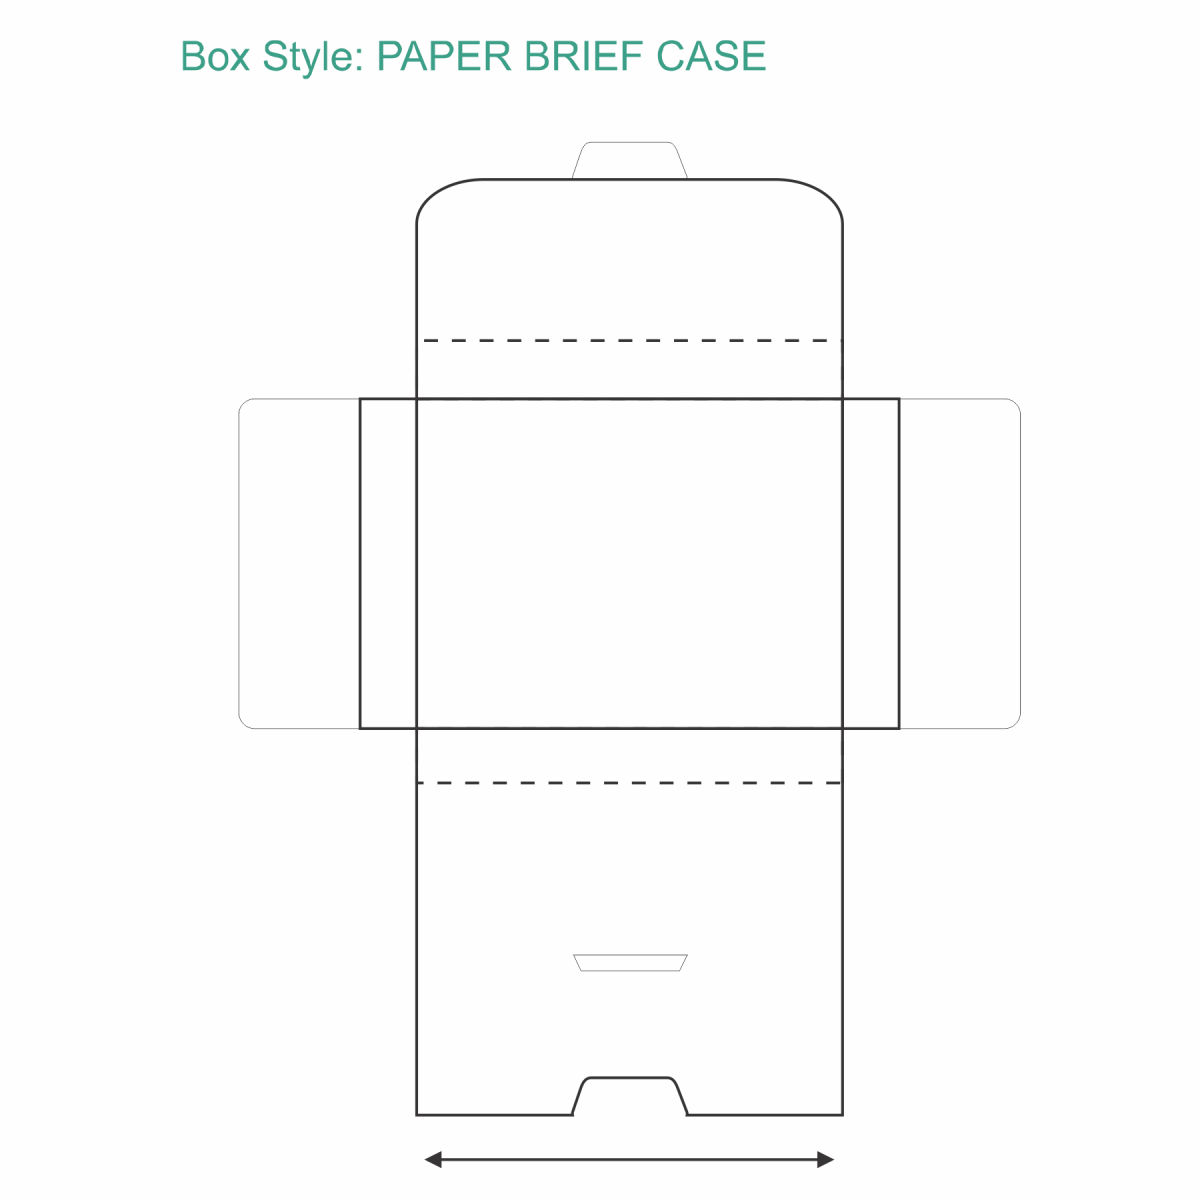 Paper Brief Case